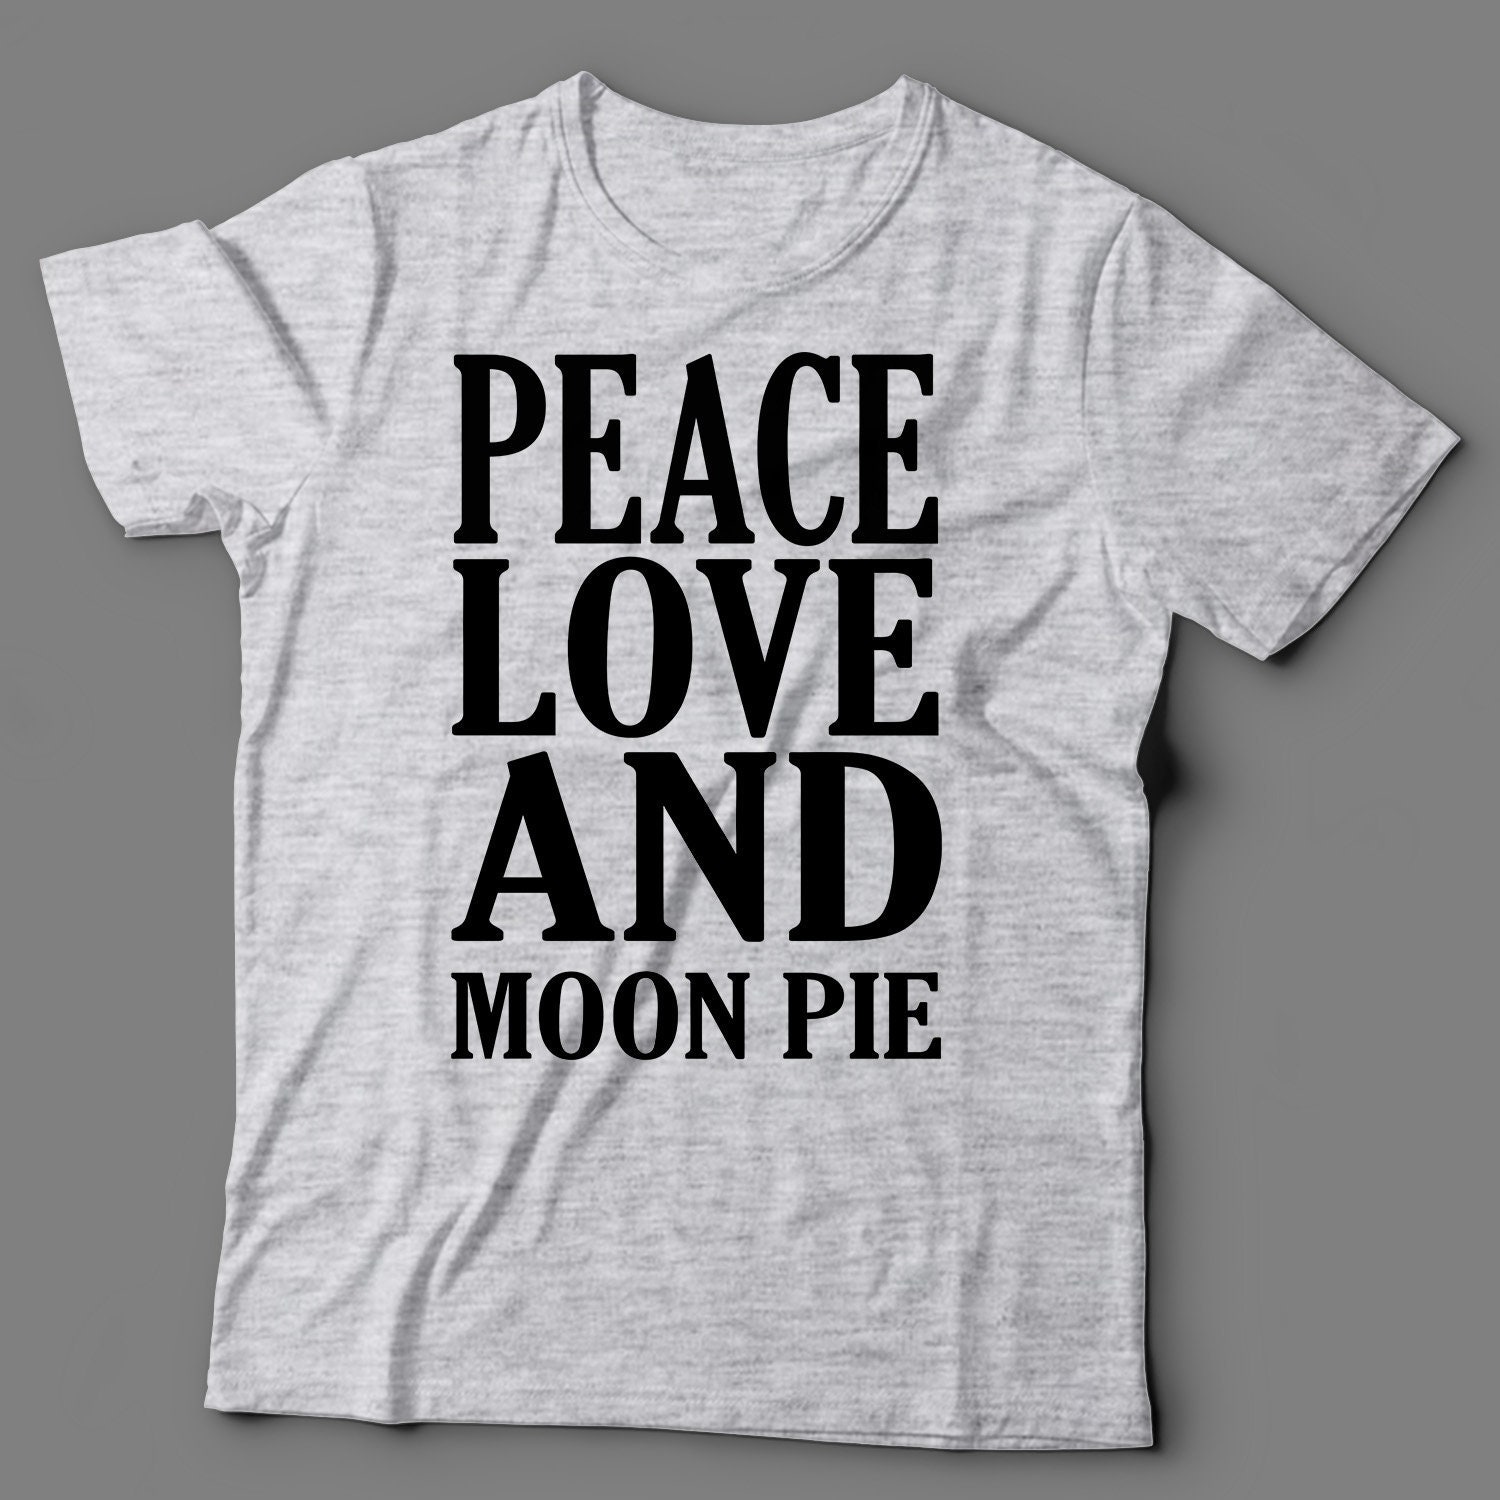 I Love Apple Pie Adult Mens T-Shirt Tee S M L XL 2XL 3XL New 